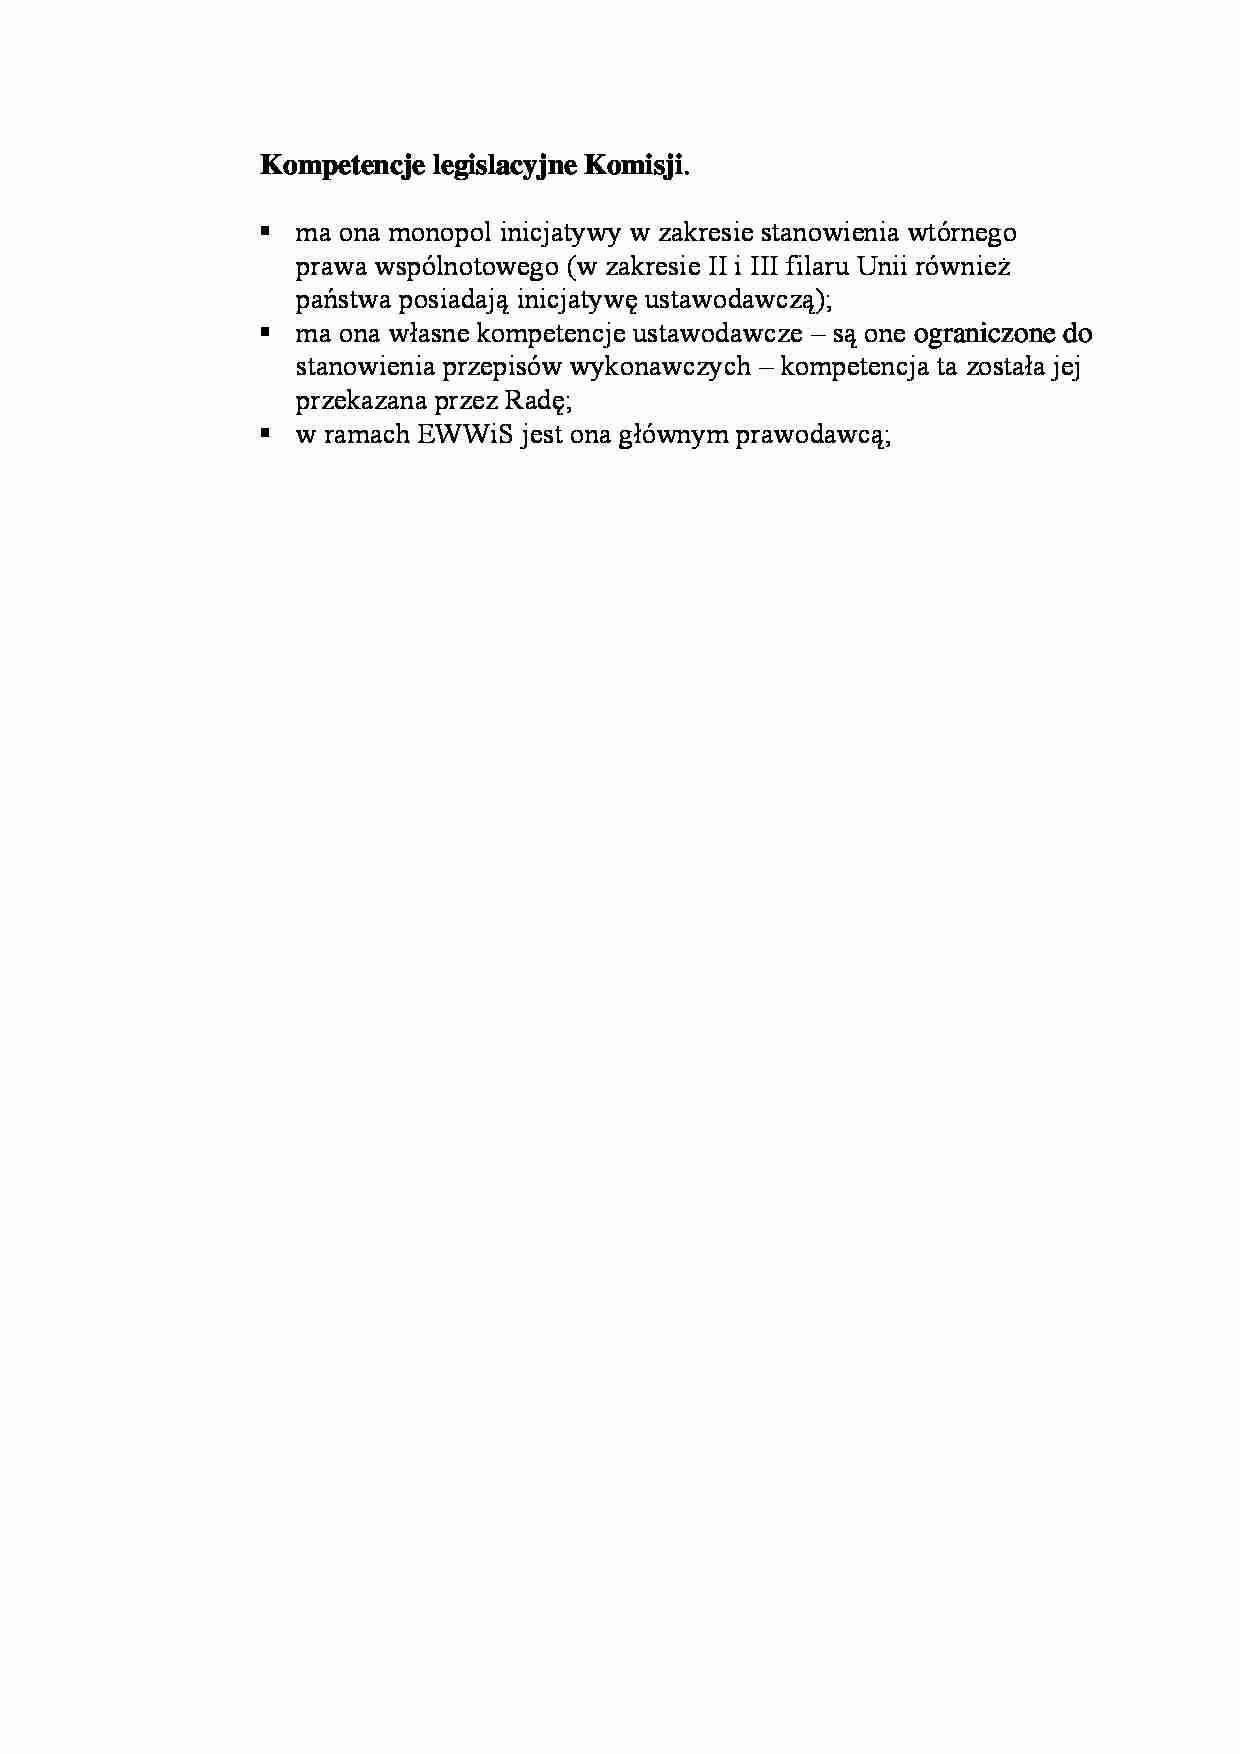 Kompetencje legislacyjne Komisji-opracowanie - strona 1